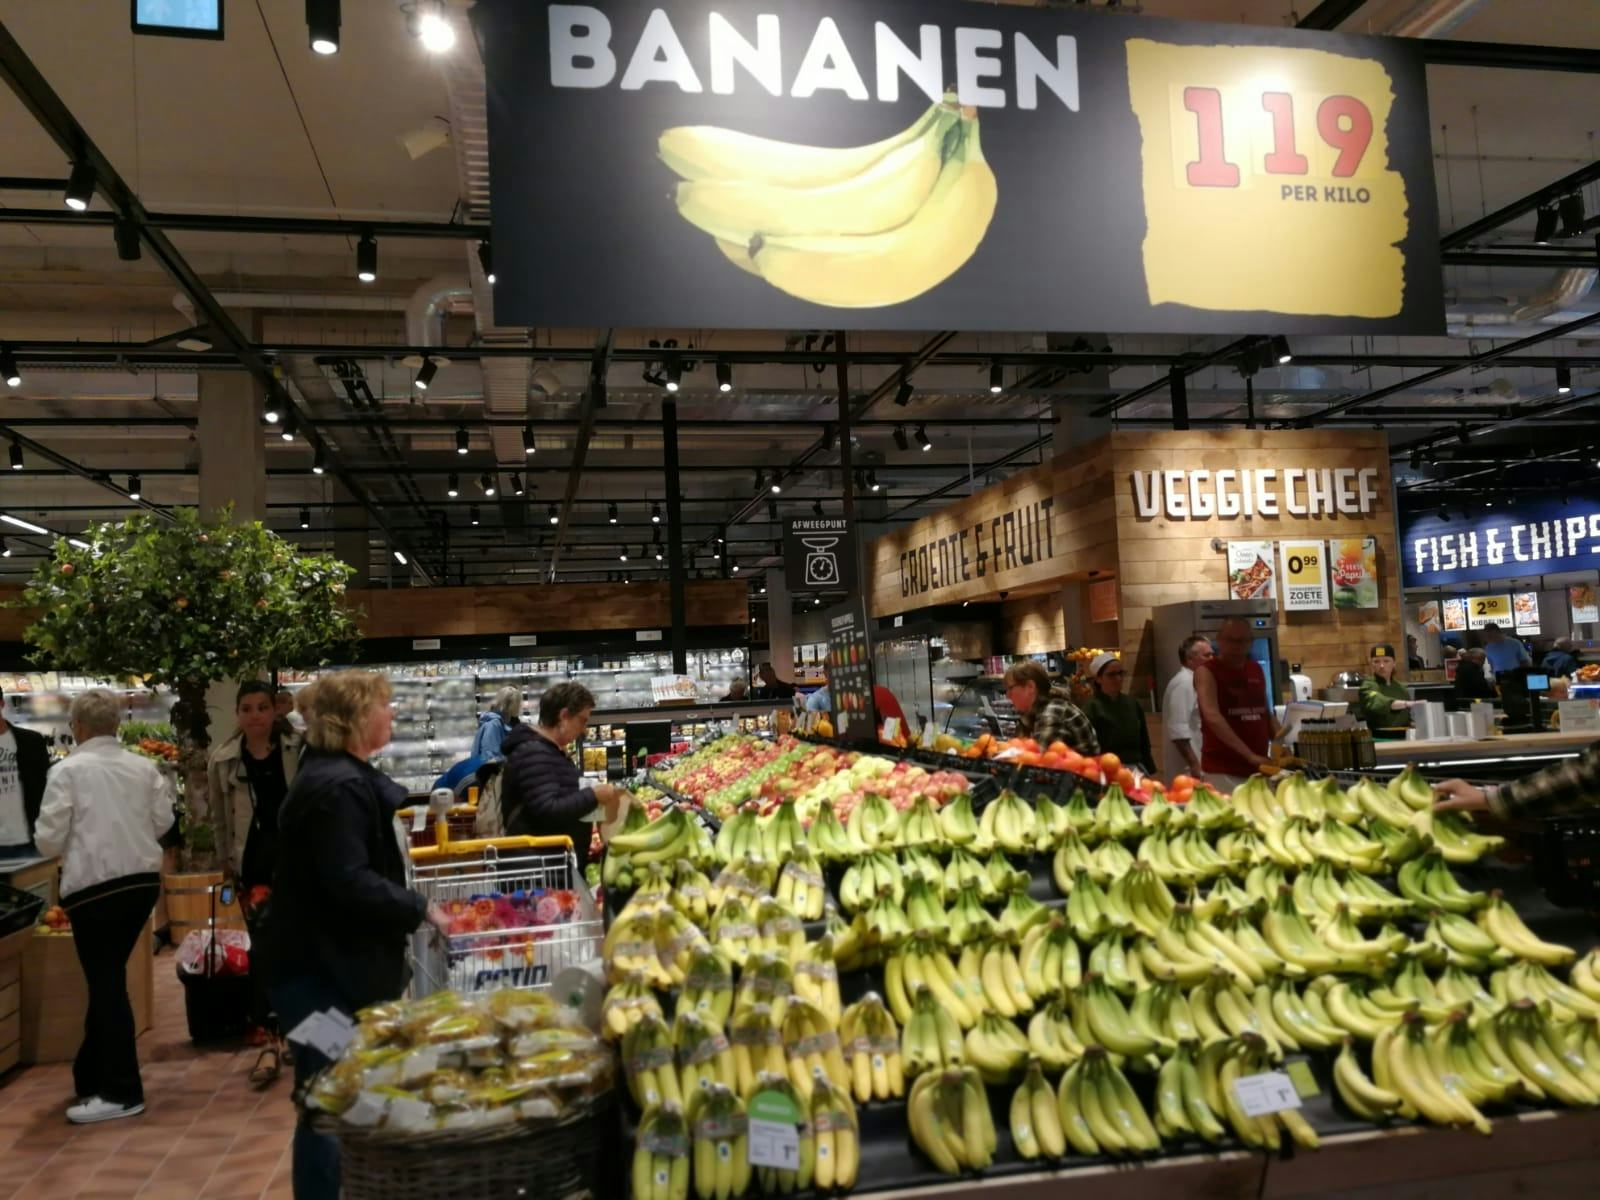 Bananenschimmel 'sneller dan ooit' te vinden